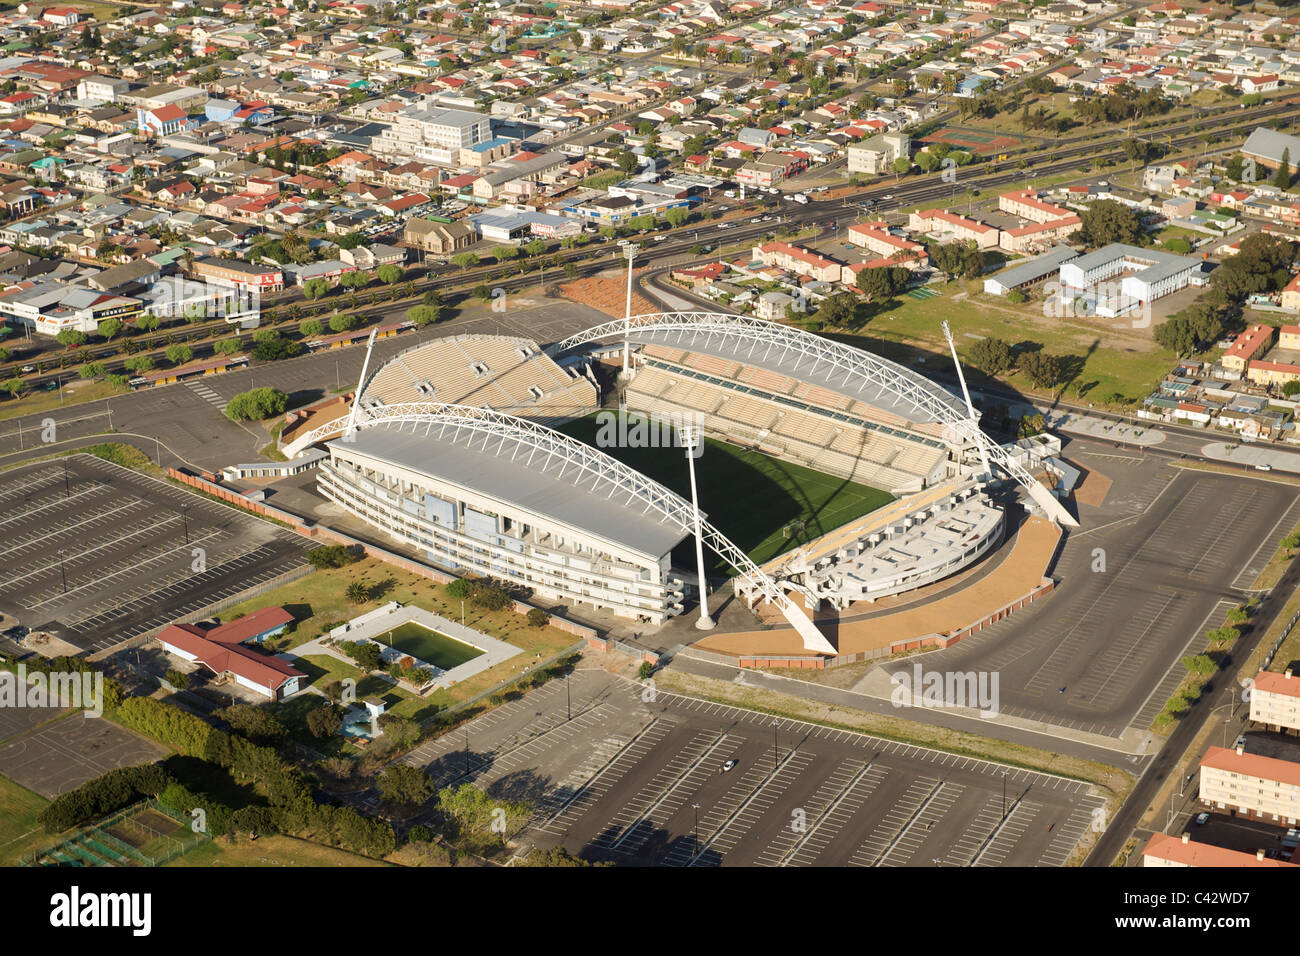 Vista aérea del Athlone Stadium y el M18 (Klipfontein road) en Cape Town, Sudáfrica. Foto de stock